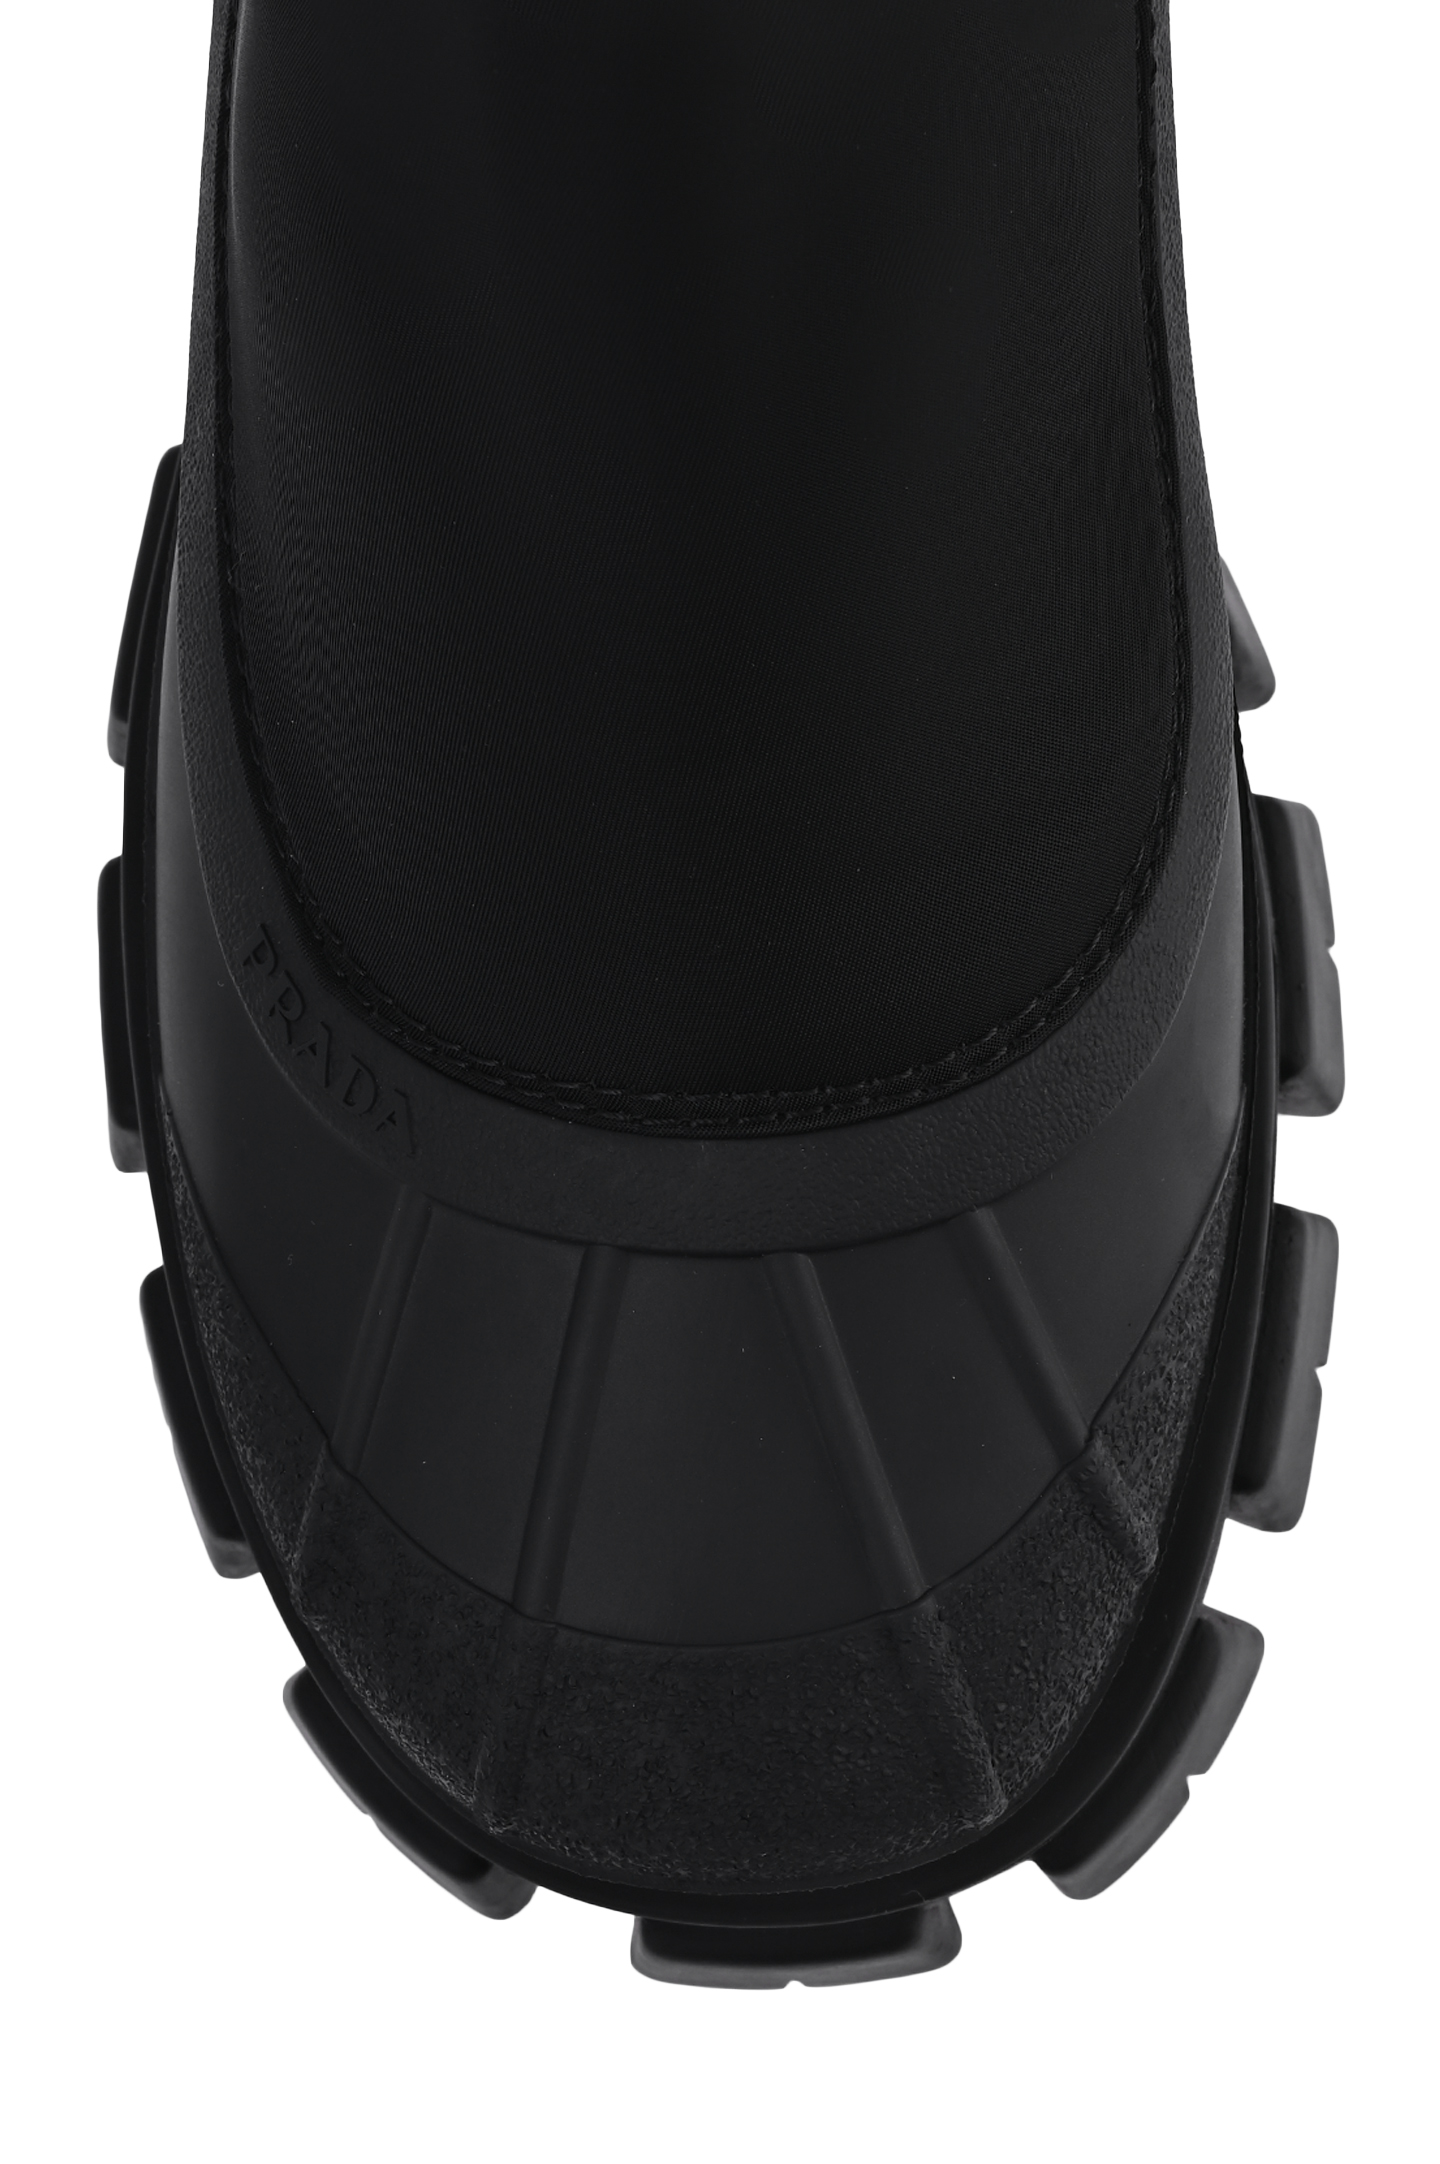 Ботинки PRADA 2UE0293LFVF0002, цвет: Черный, Мужской